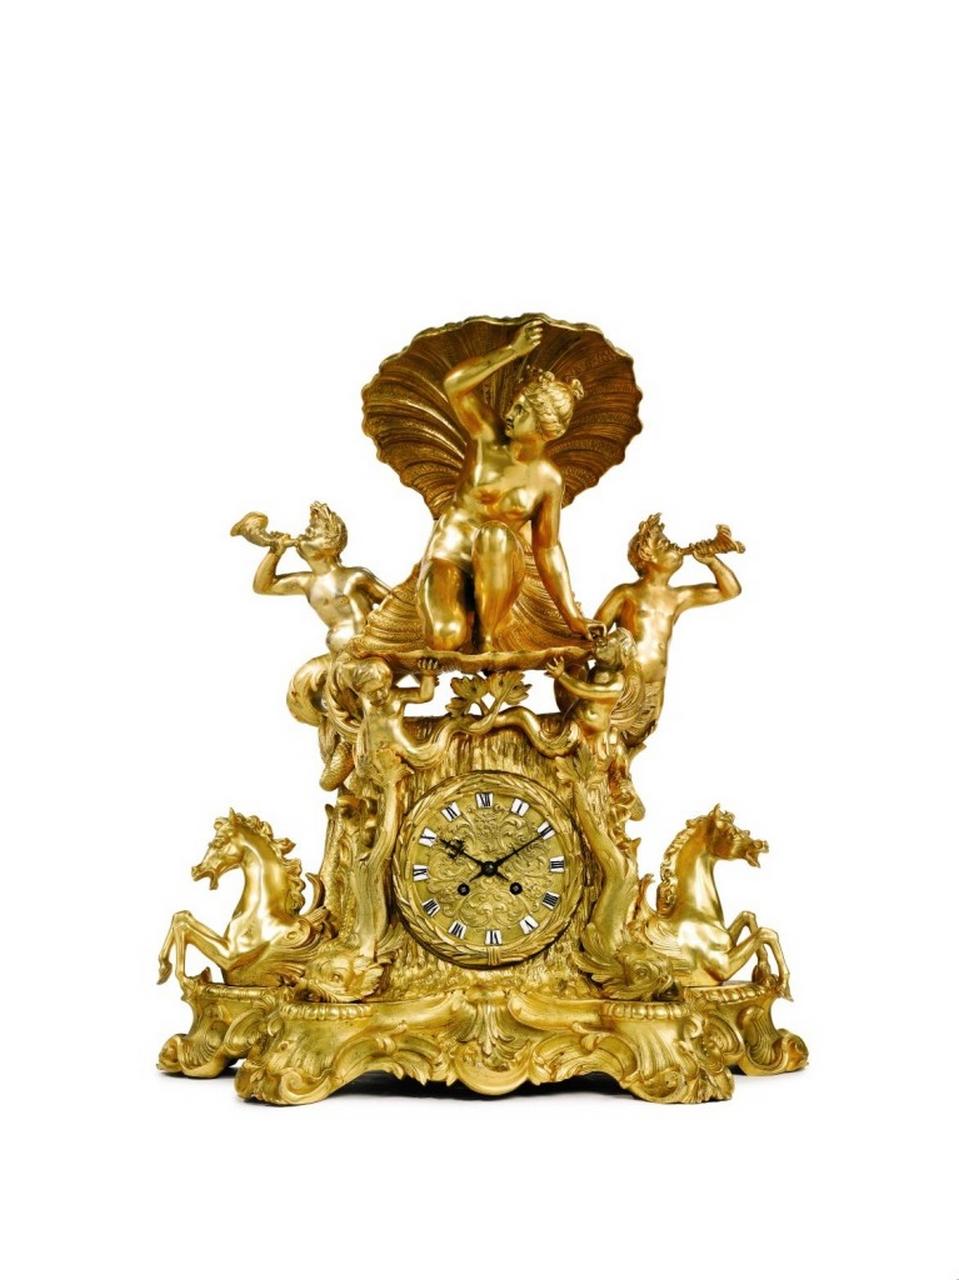 L'objet que nous proposons est une grande et impressionnante horloge de cheminée en bronze doré, bronze patiné et bronze doré de style Louis XVI, de qualité muséale, représentant la naissance de Vénus, magnifiquement exécutée avec des détails exquis